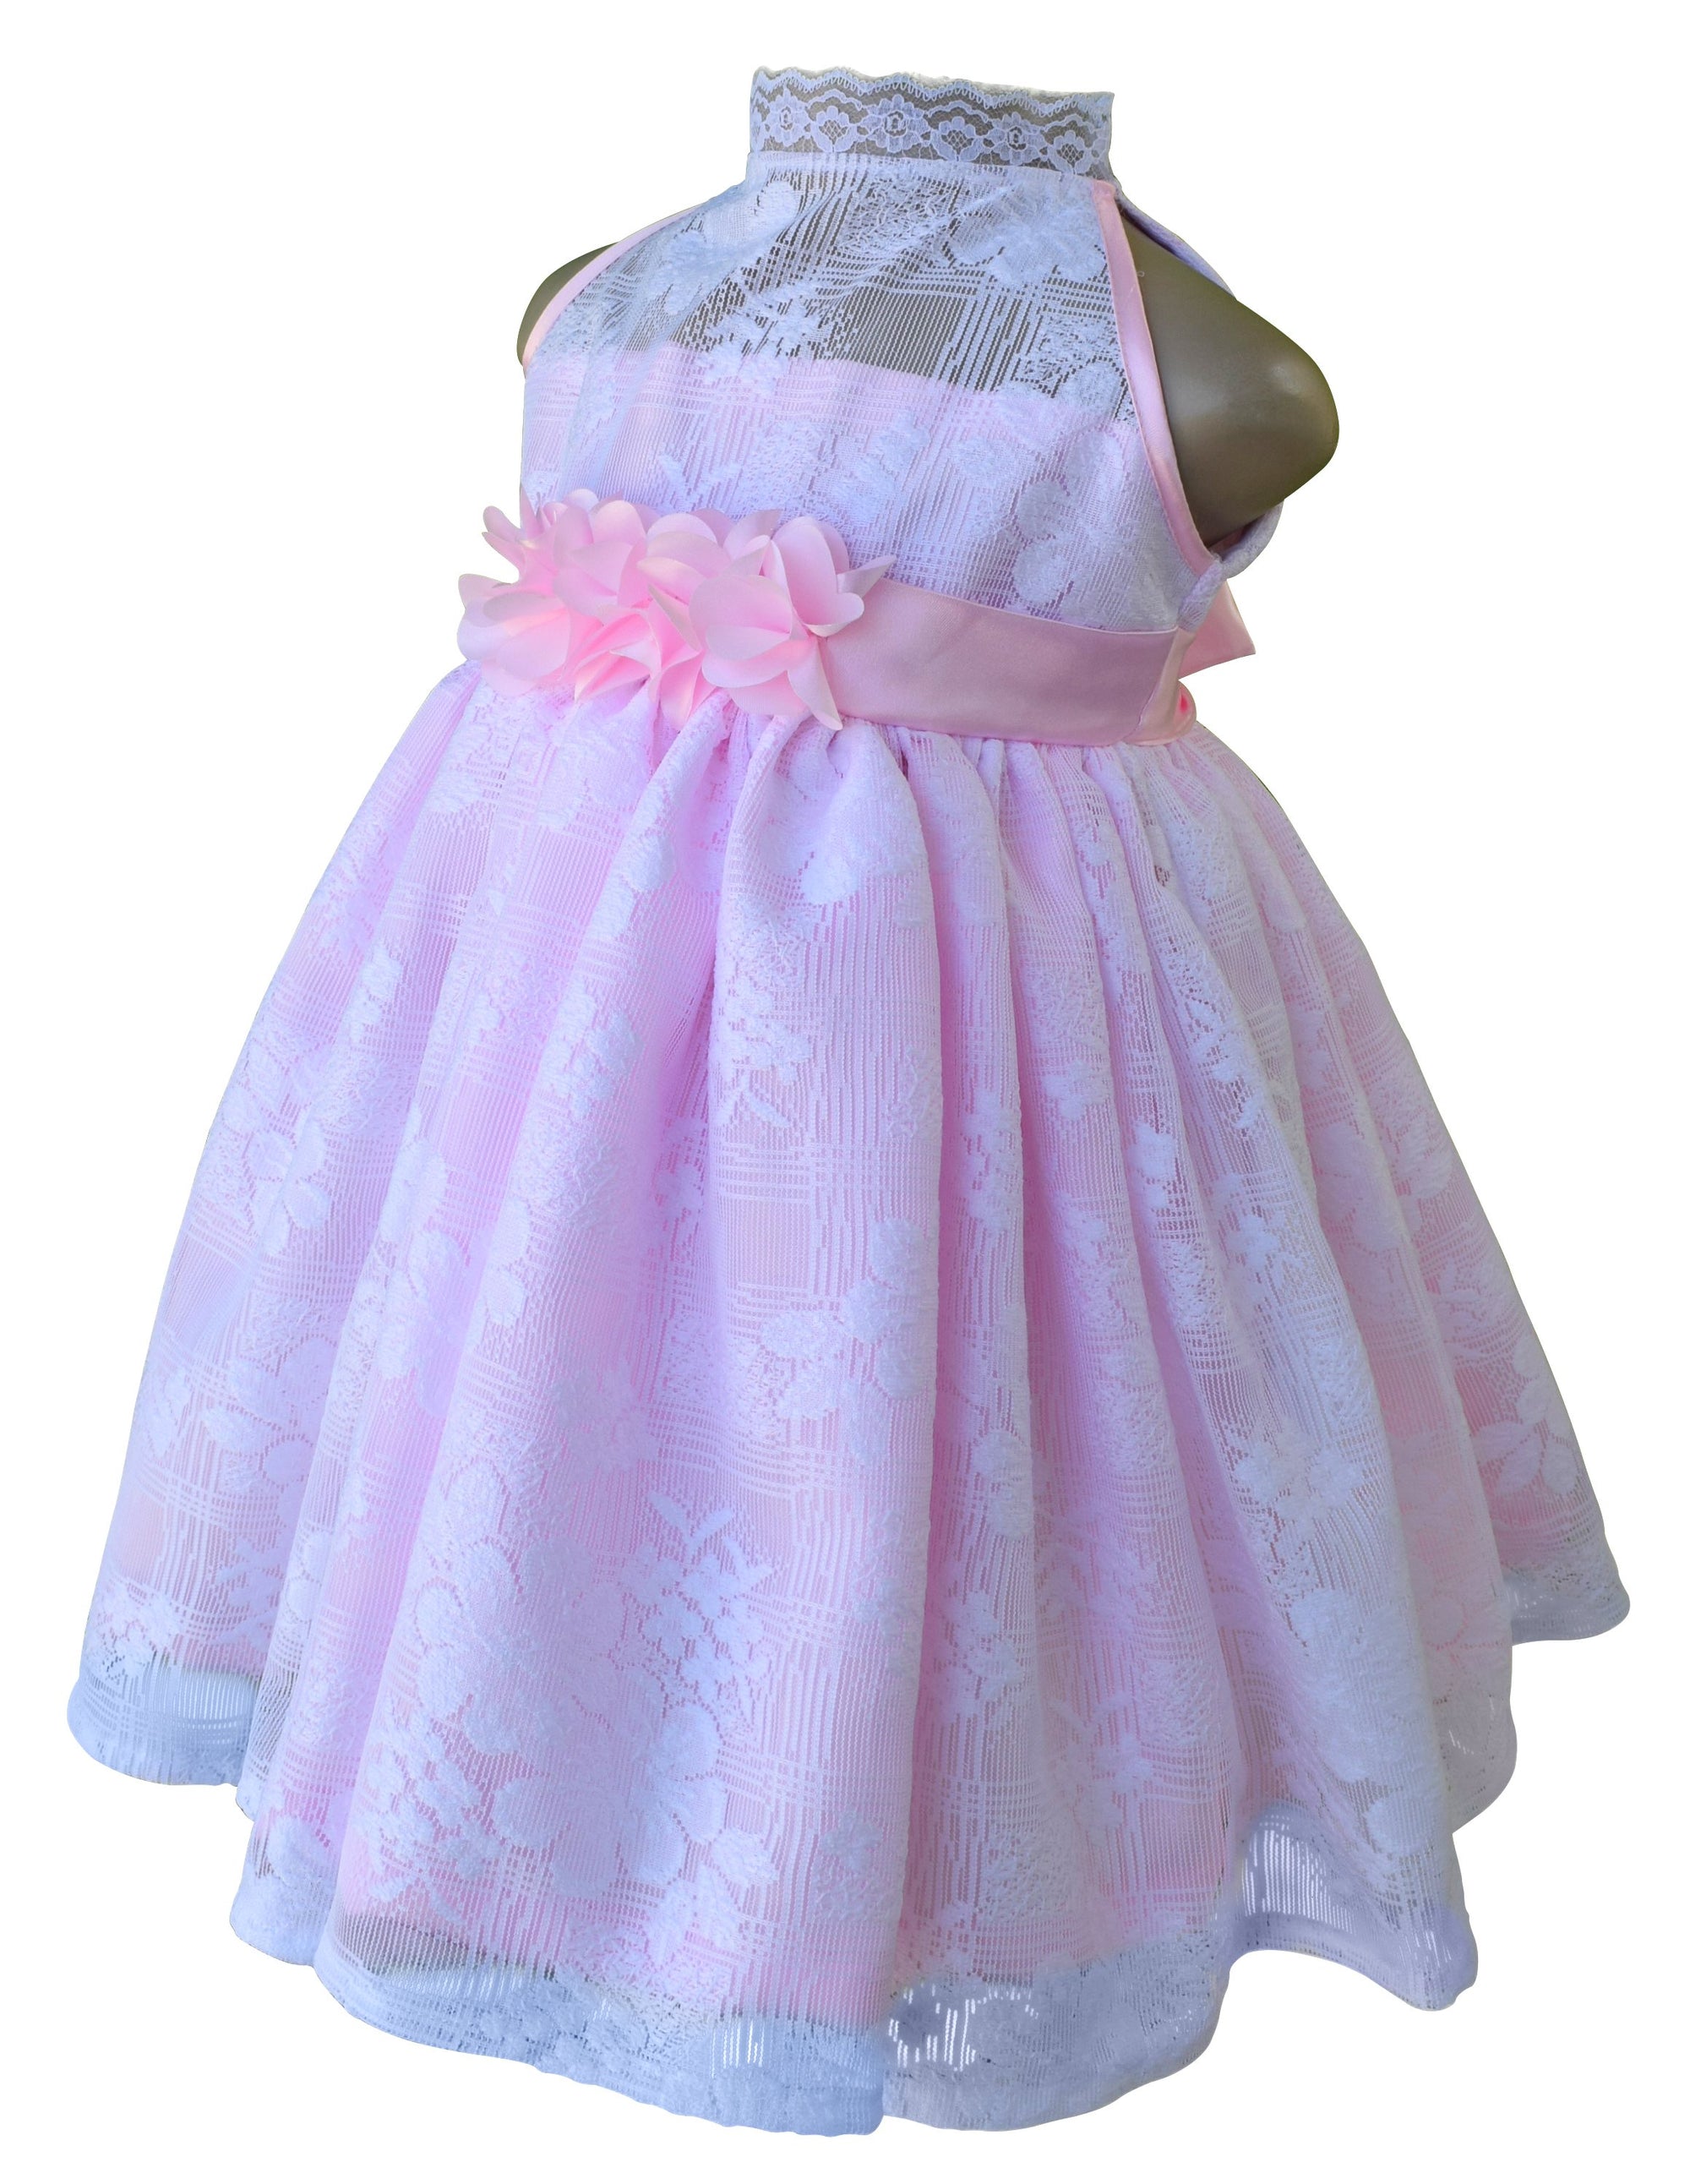 Baby girl Dress_Faye Pink & White Lace Dress